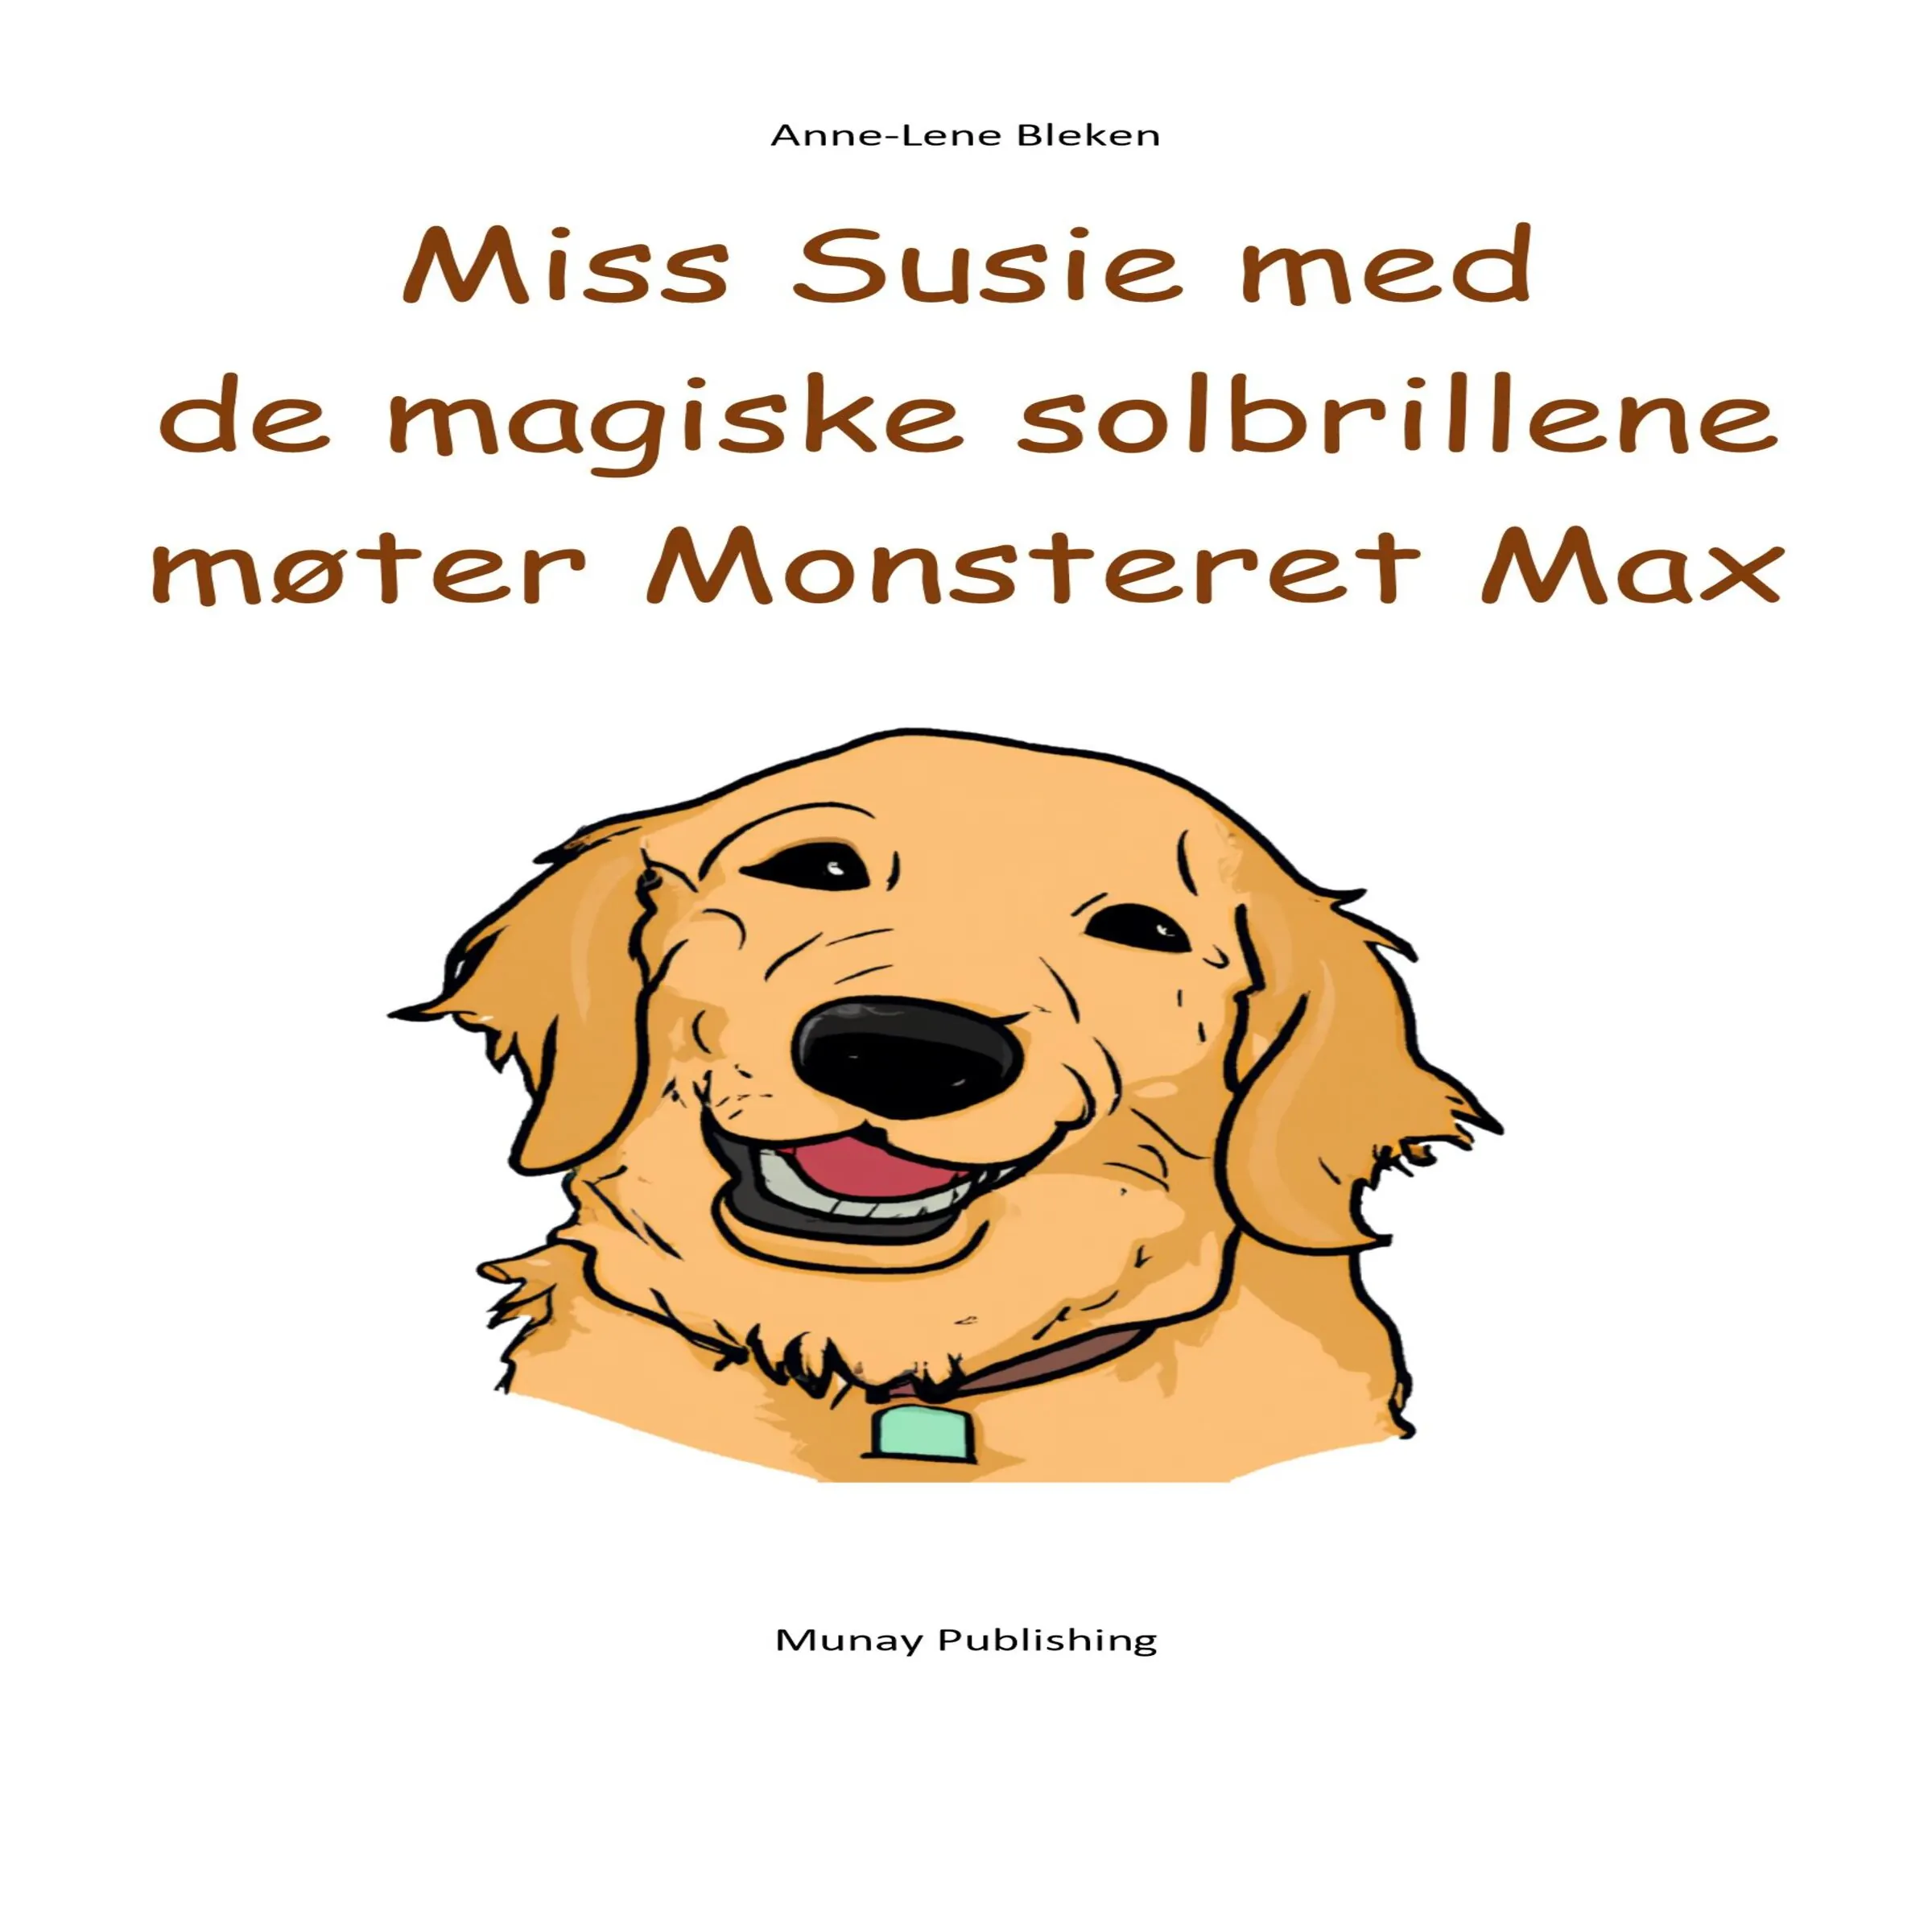 Miss Susie med de magiske solbrillene møter Monsteret Max by Anne-Lene Bleken Audiobook